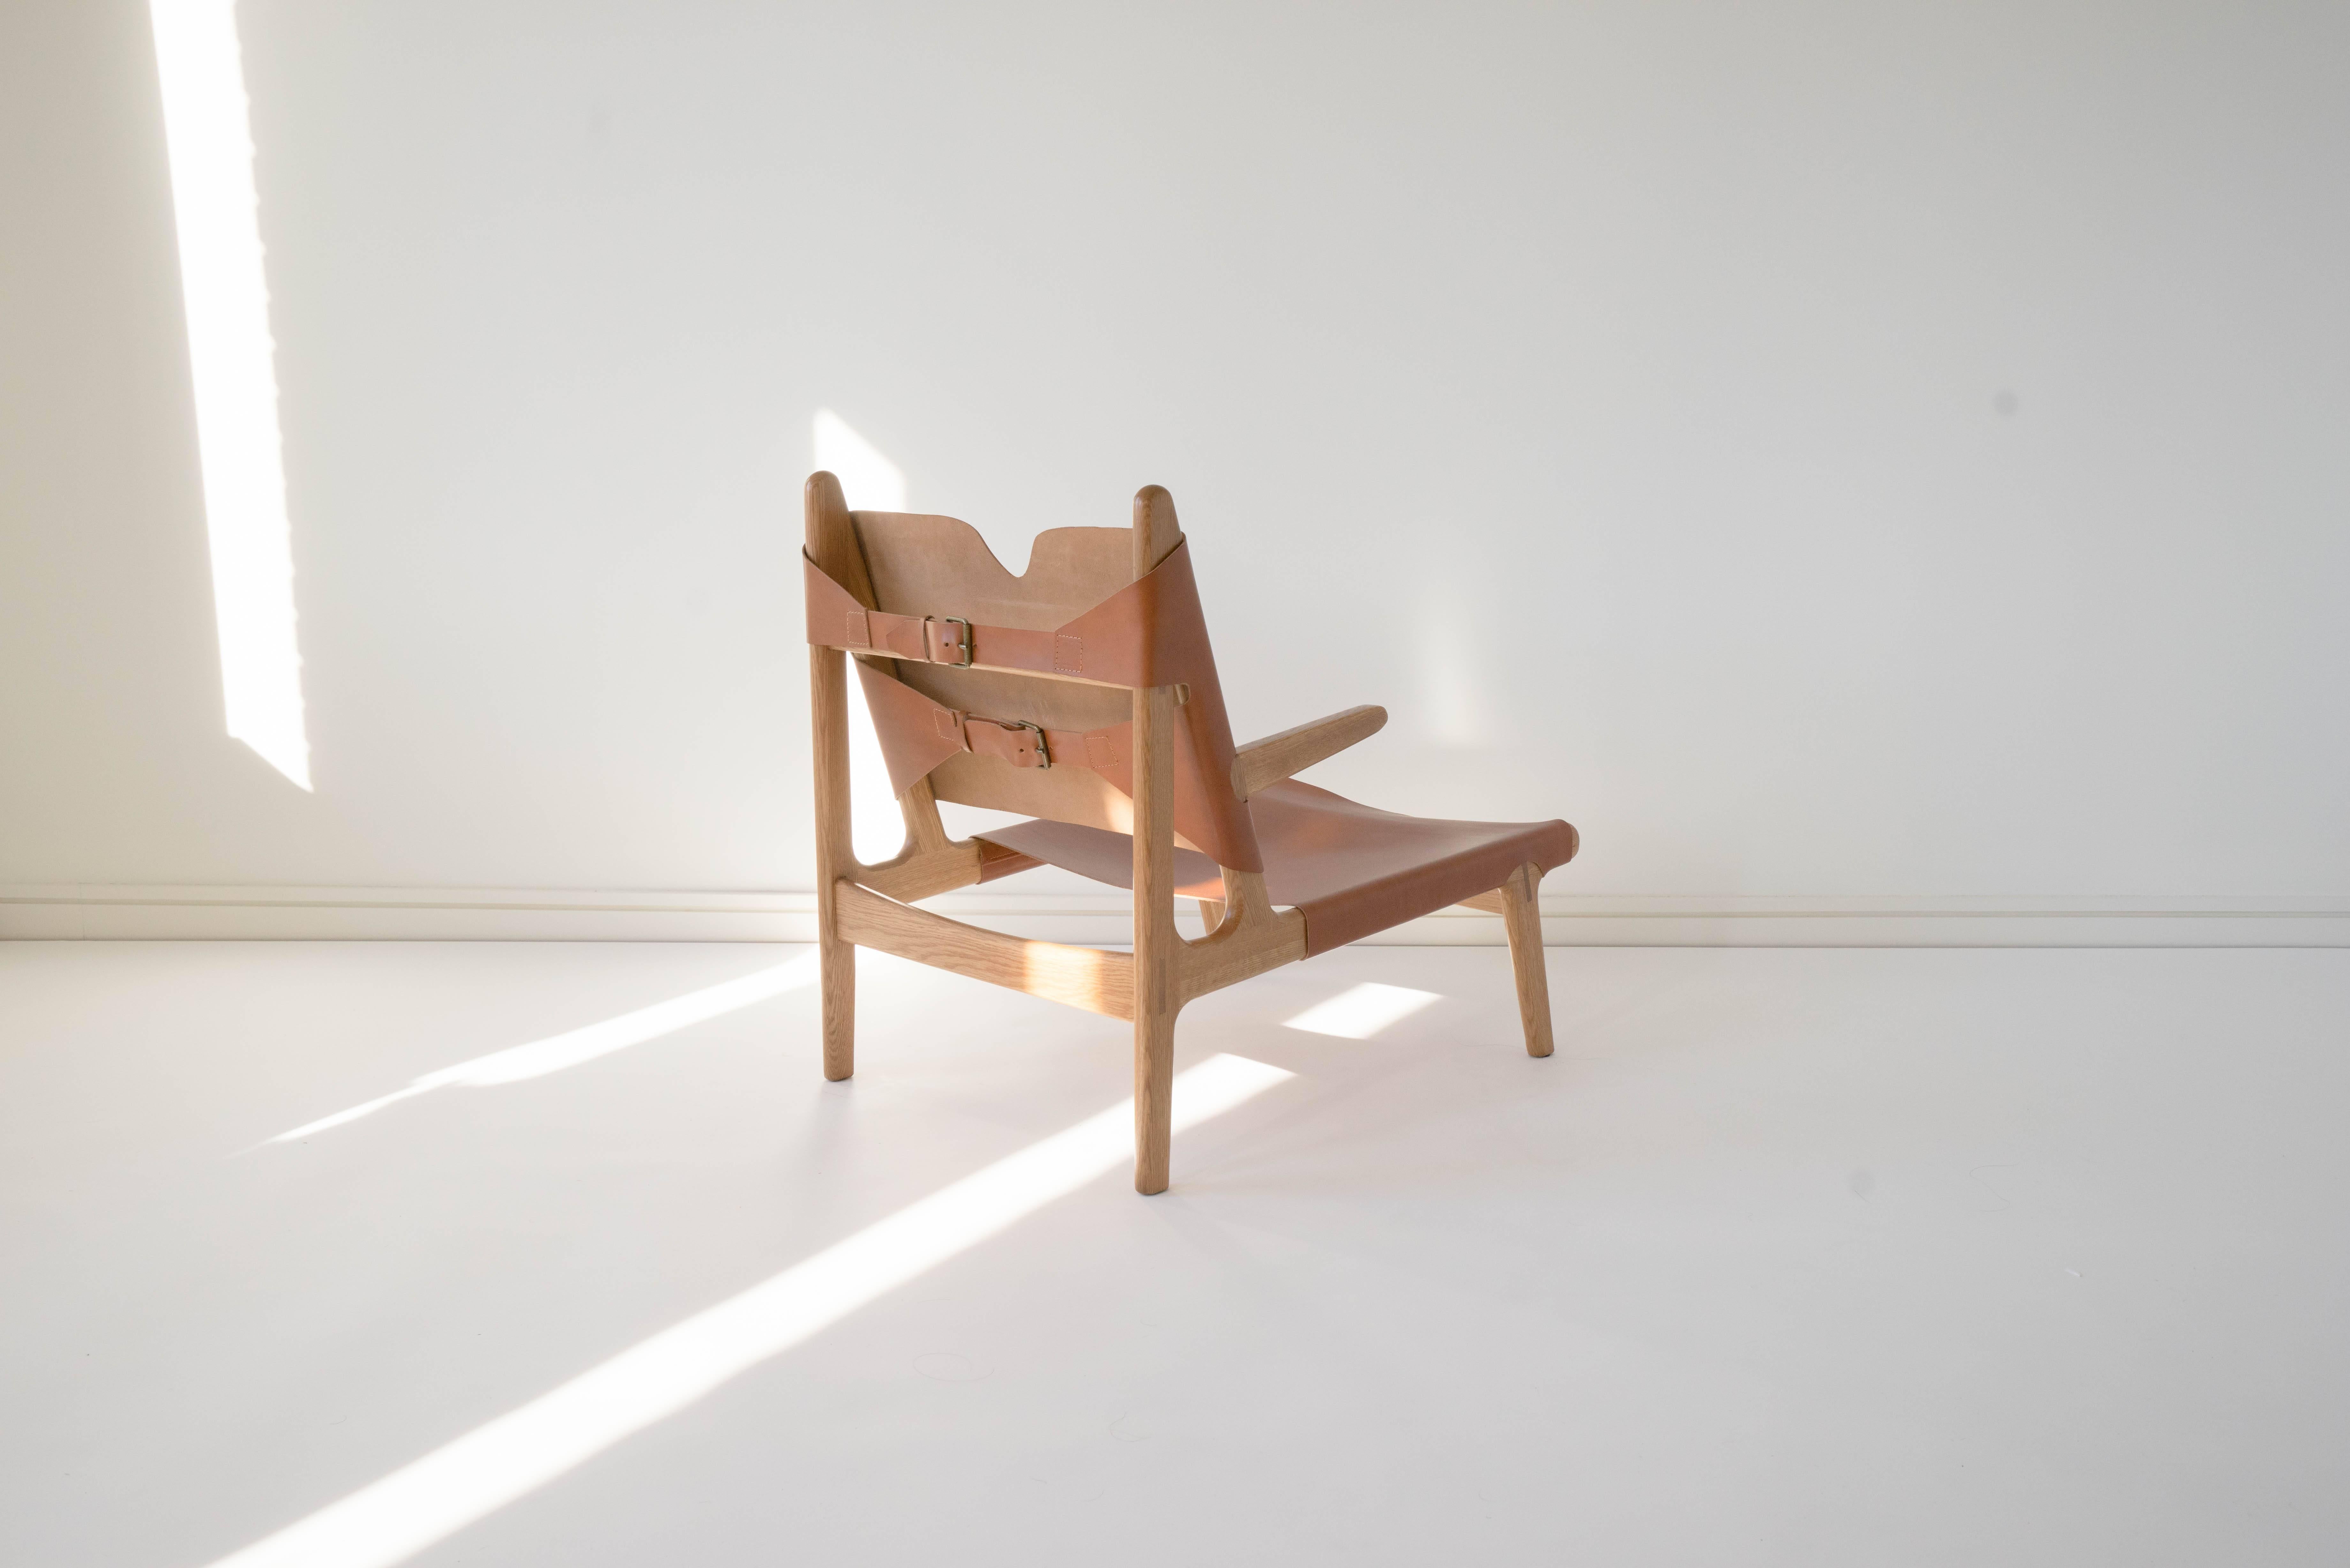 Sun at Six est un studio de conception de mobilier contemporain qui travaille avec des maîtres menuisiers chinois traditionnels pour fabriquer ses pièces à la main en utilisant la menuiserie traditionnelle. Le cuir de tannage végétal se patine avec